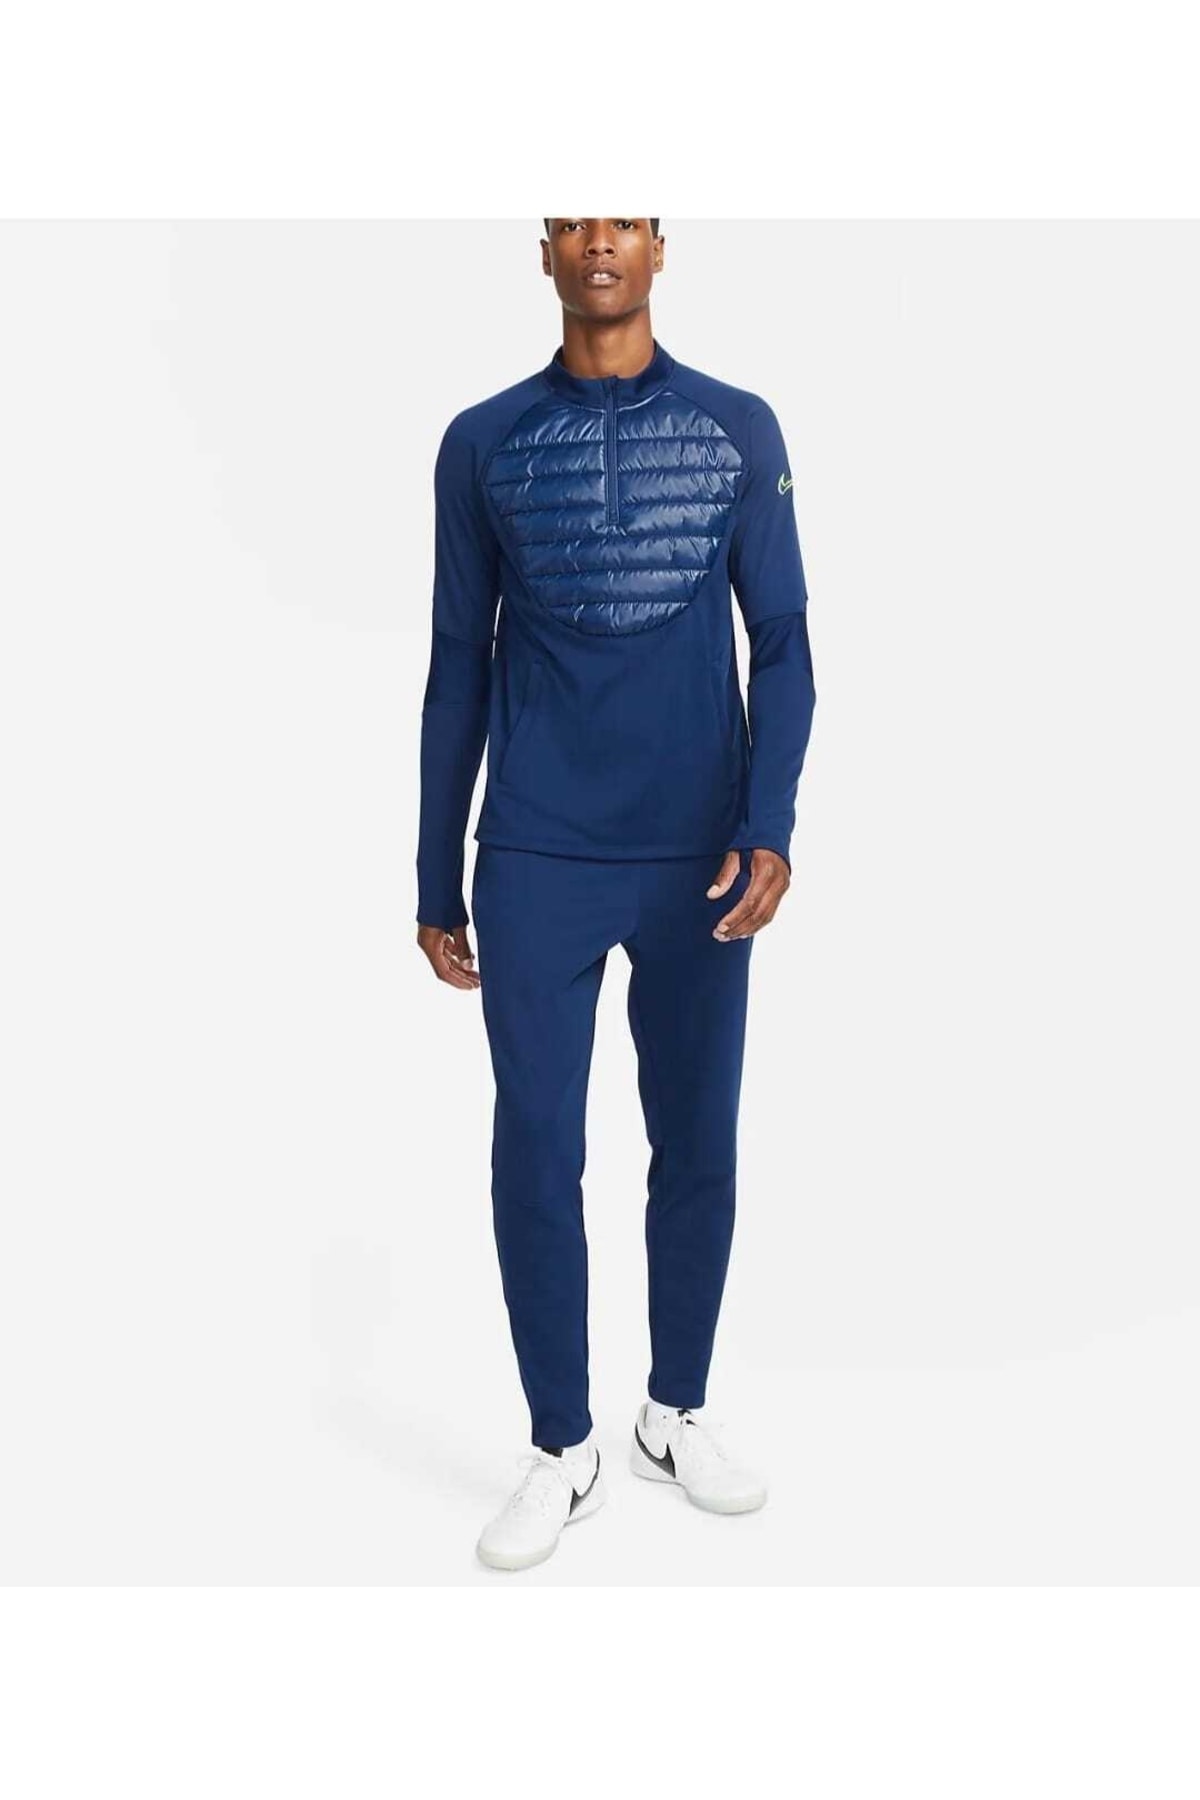 Nike Therma-fit Academy Winter Warrior Soccer Long-sleeve Erkek Sweatshirt